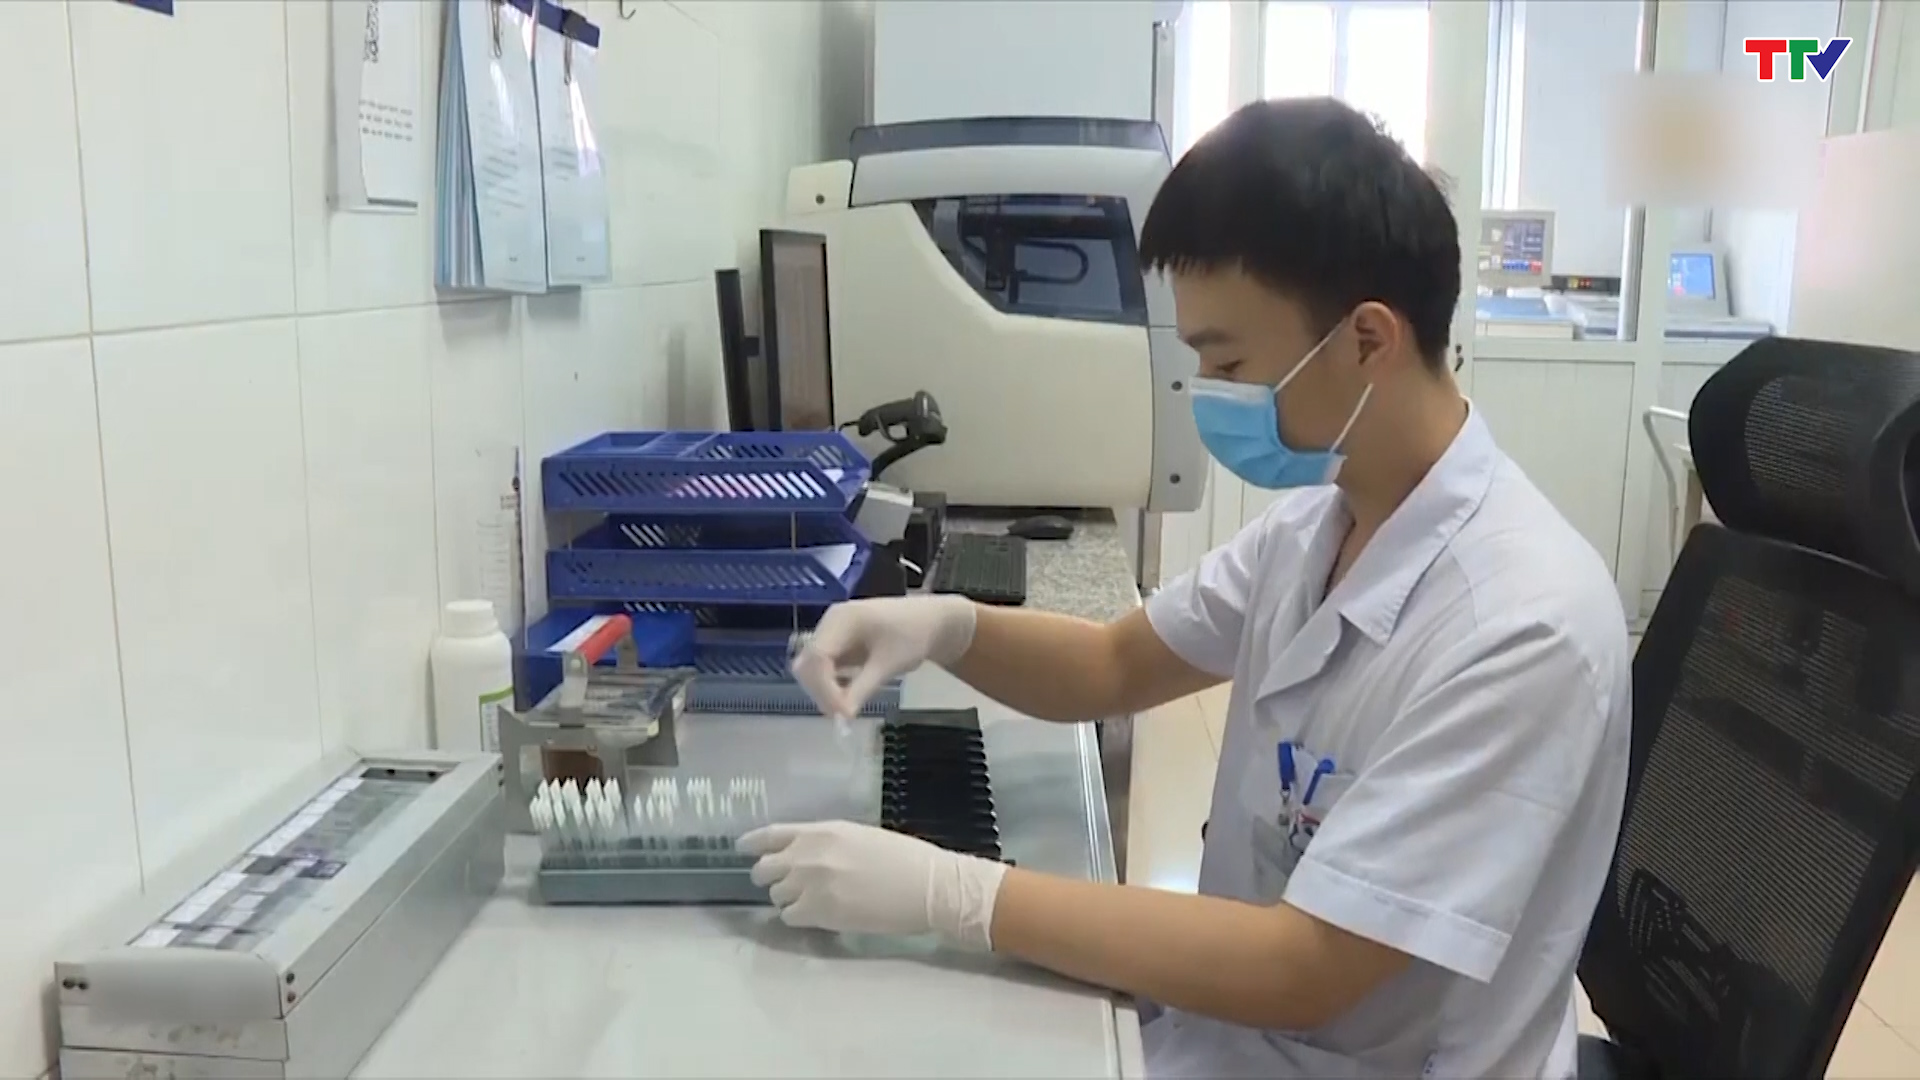 Tỷ lệ bệnh nhân ung thư Việt Nam được chữa khỏi đã tăng lên đáng kể - Ảnh 2.